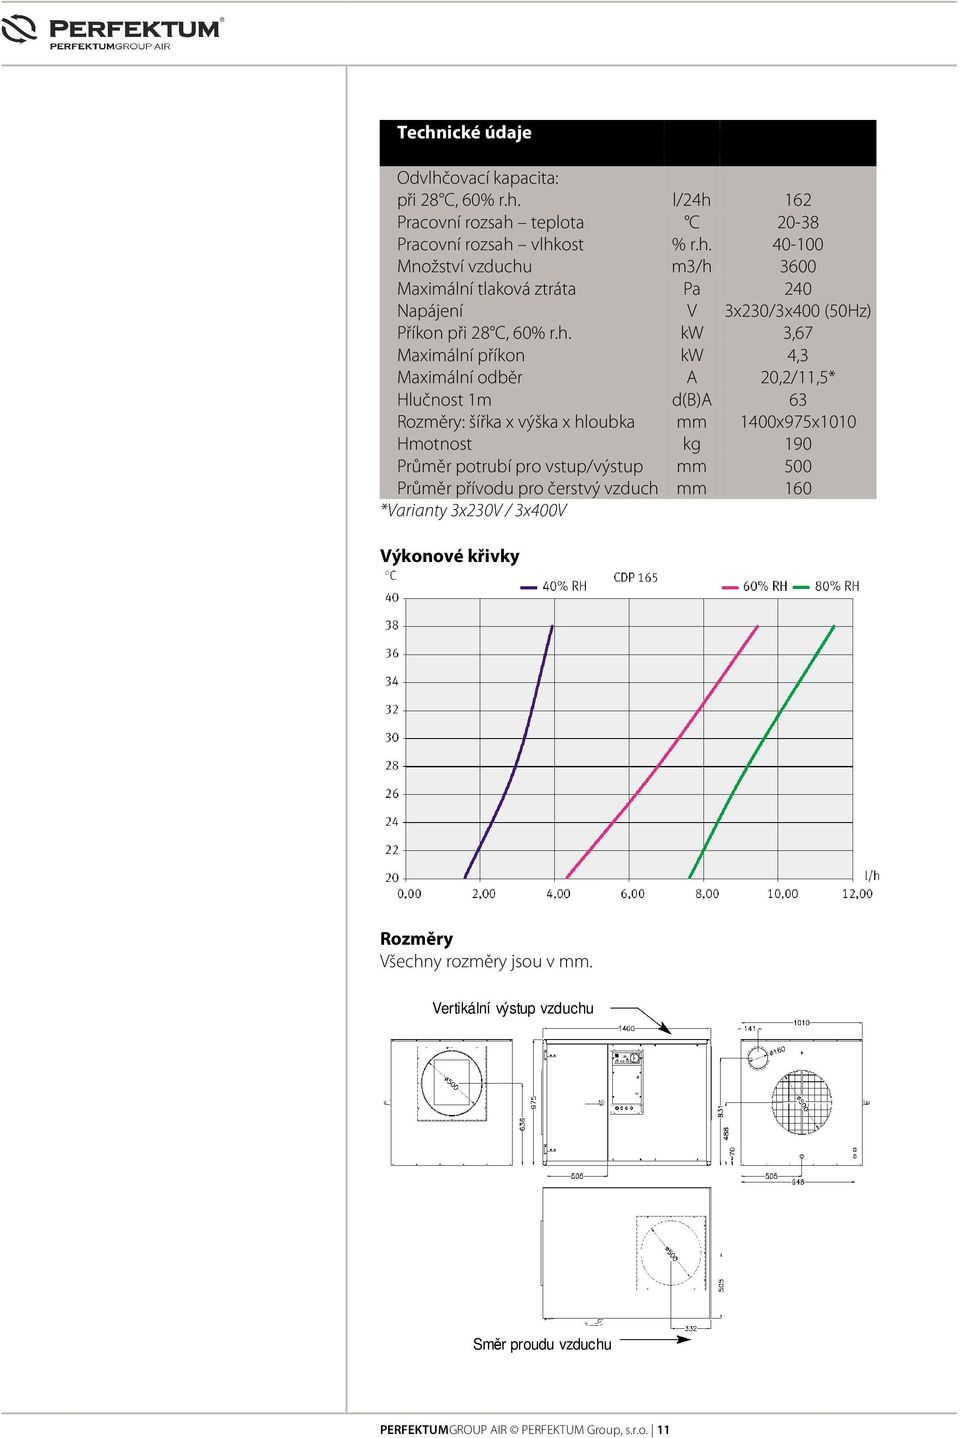 potrubí pro vstup/výstup mm 500 Průměr přívodu pro čerstvý vzduch mm 160 *Varianty 3x230V / 3x400V Výkonové křivky Rozměry Všechny rozměry jsou v mm.